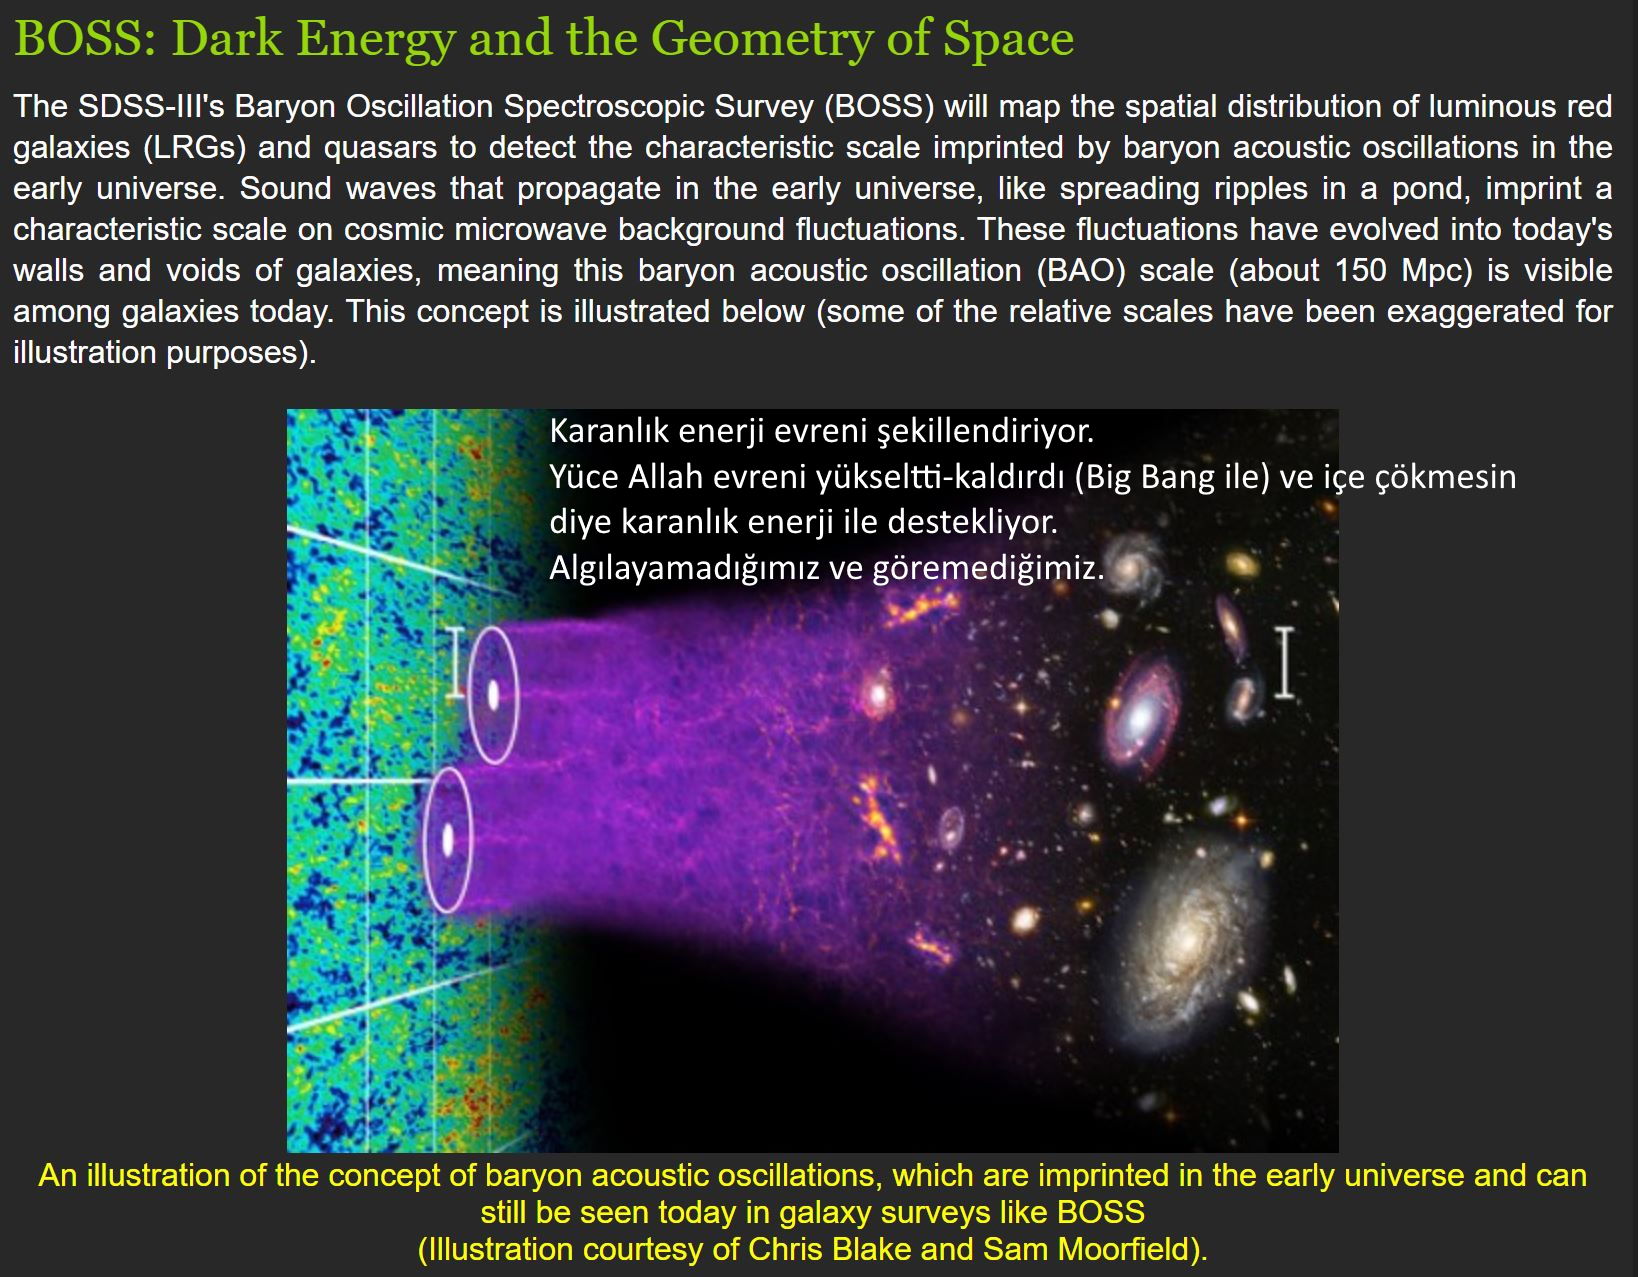 karanlik enerji evren kuran mucizeler evrenin genislemesi desteklenmesi yukseltilmesi